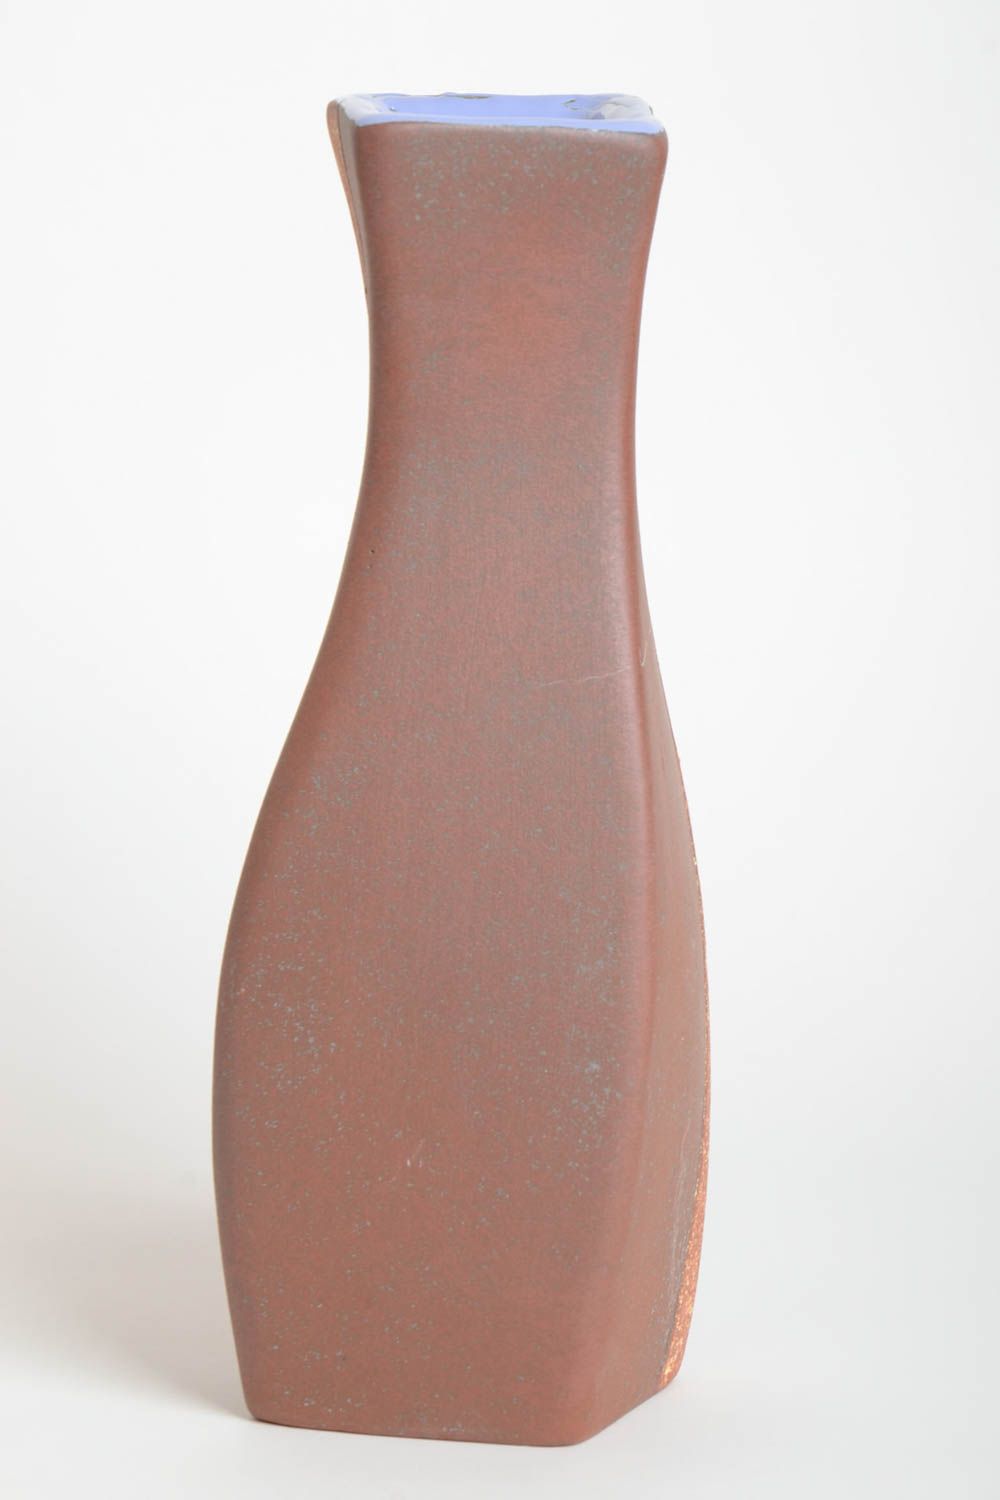 Сувенир ручной работы керамическая ваза для цветов декор интерьера цветок Майя фото 4